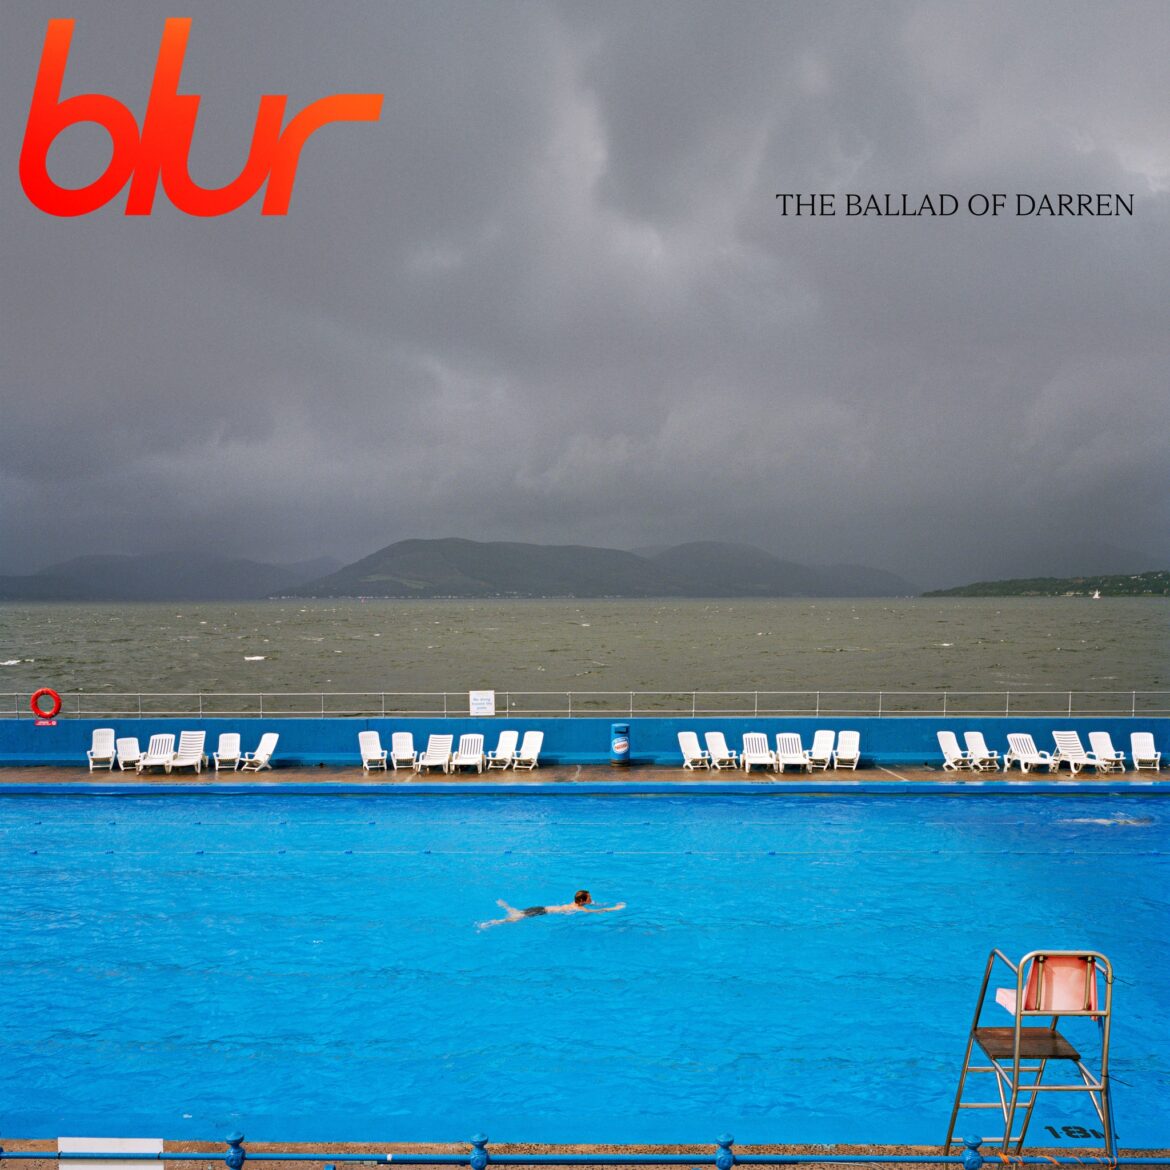 Nyt album fra Blur udkommer til juli